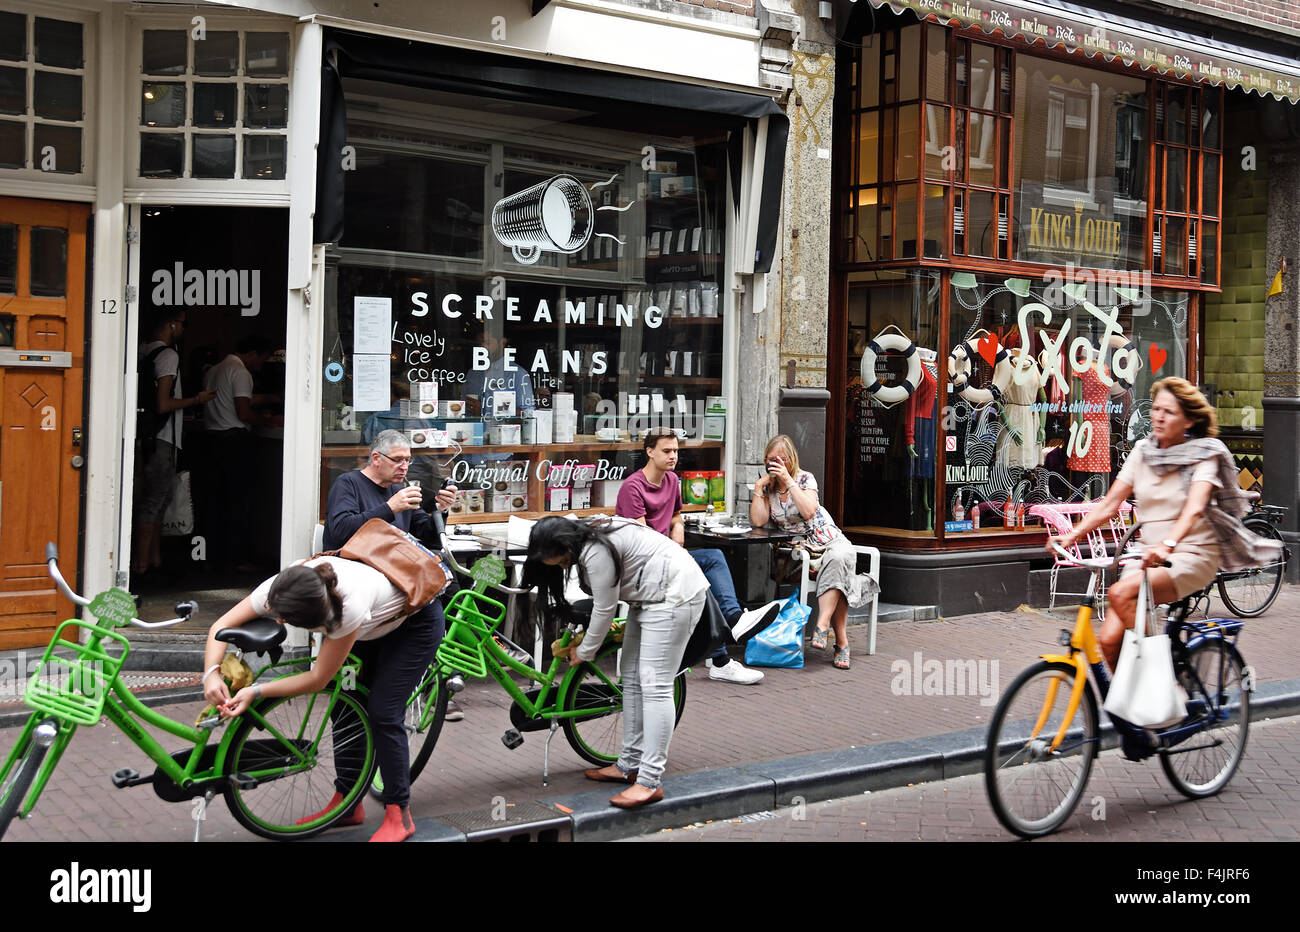 Menschen beim Einkaufen kleine bars Boutiquen (de Negen Straatjes - neun kleinen Straßen) Jordaan-Viertel von Amsterdam Niederlande Stockfoto